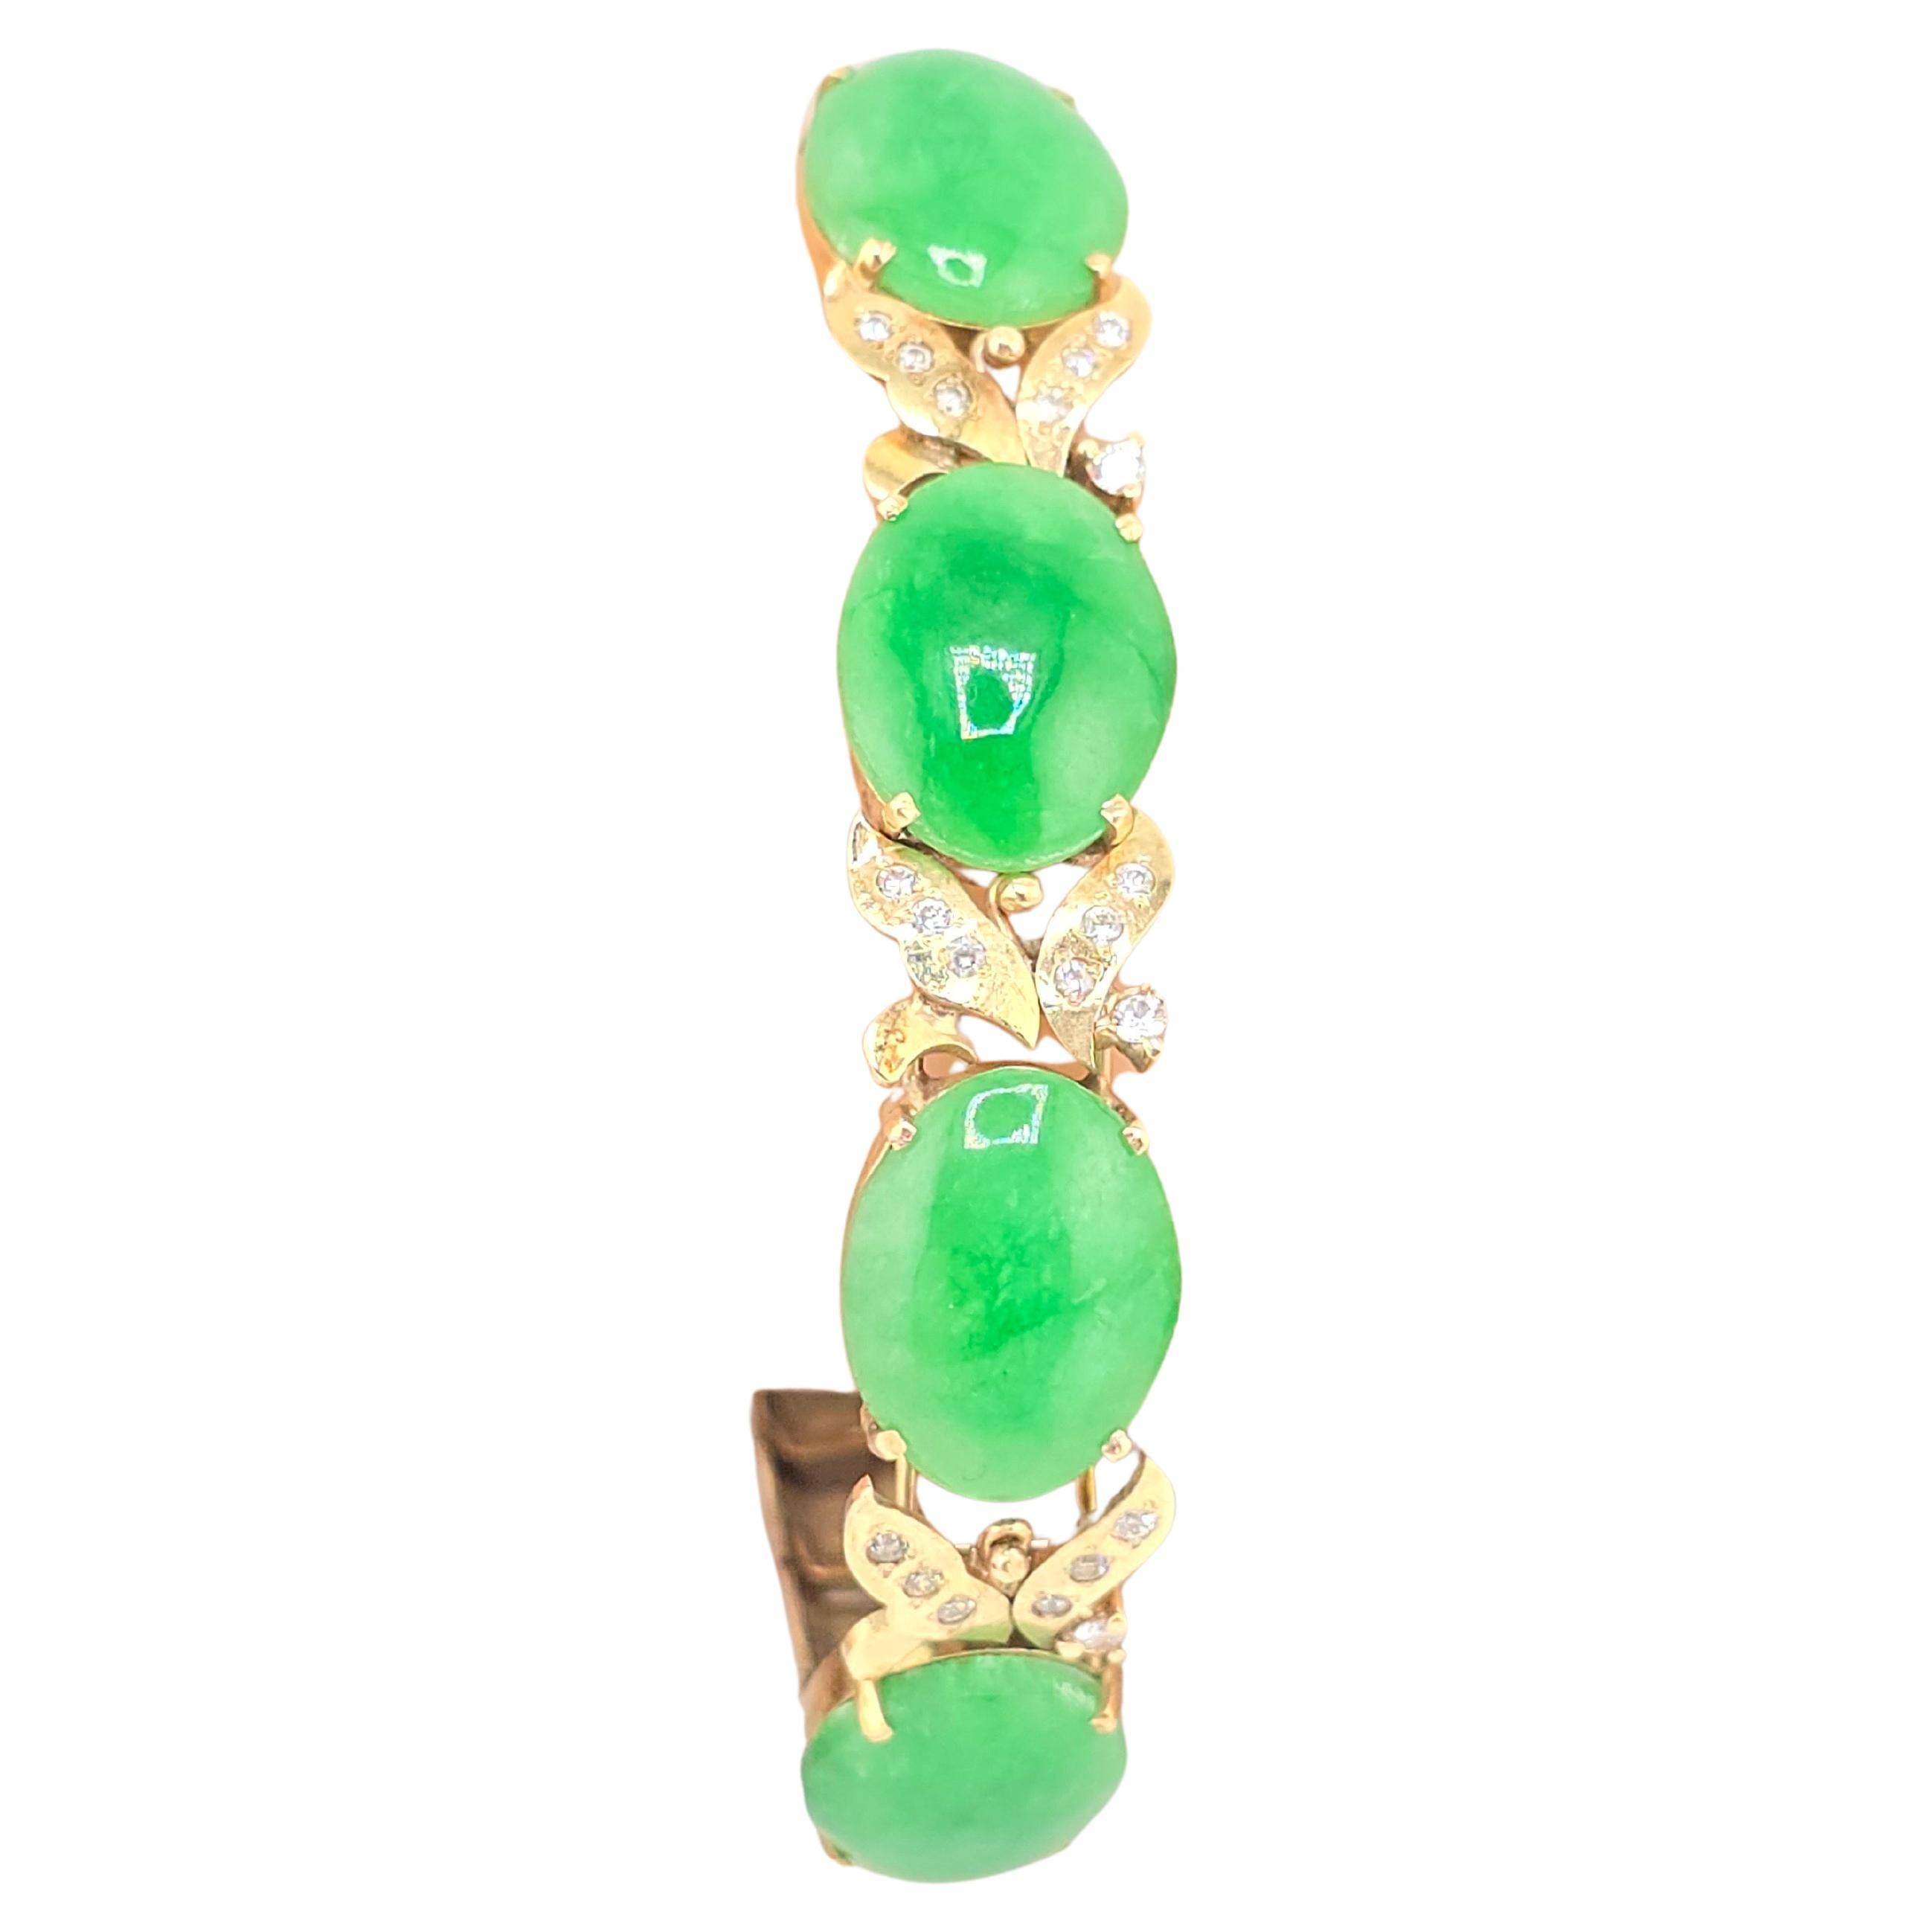 Voici un magnifique bracelet en or jaune 14 carats orné de diamants et de jadéite verte. La couleur des jades est extrêmement vibrante, comme un vert forêt. Chaque pierre est facilement supérieure à 3 carats. Il y a de nombreux diamants dans chaque